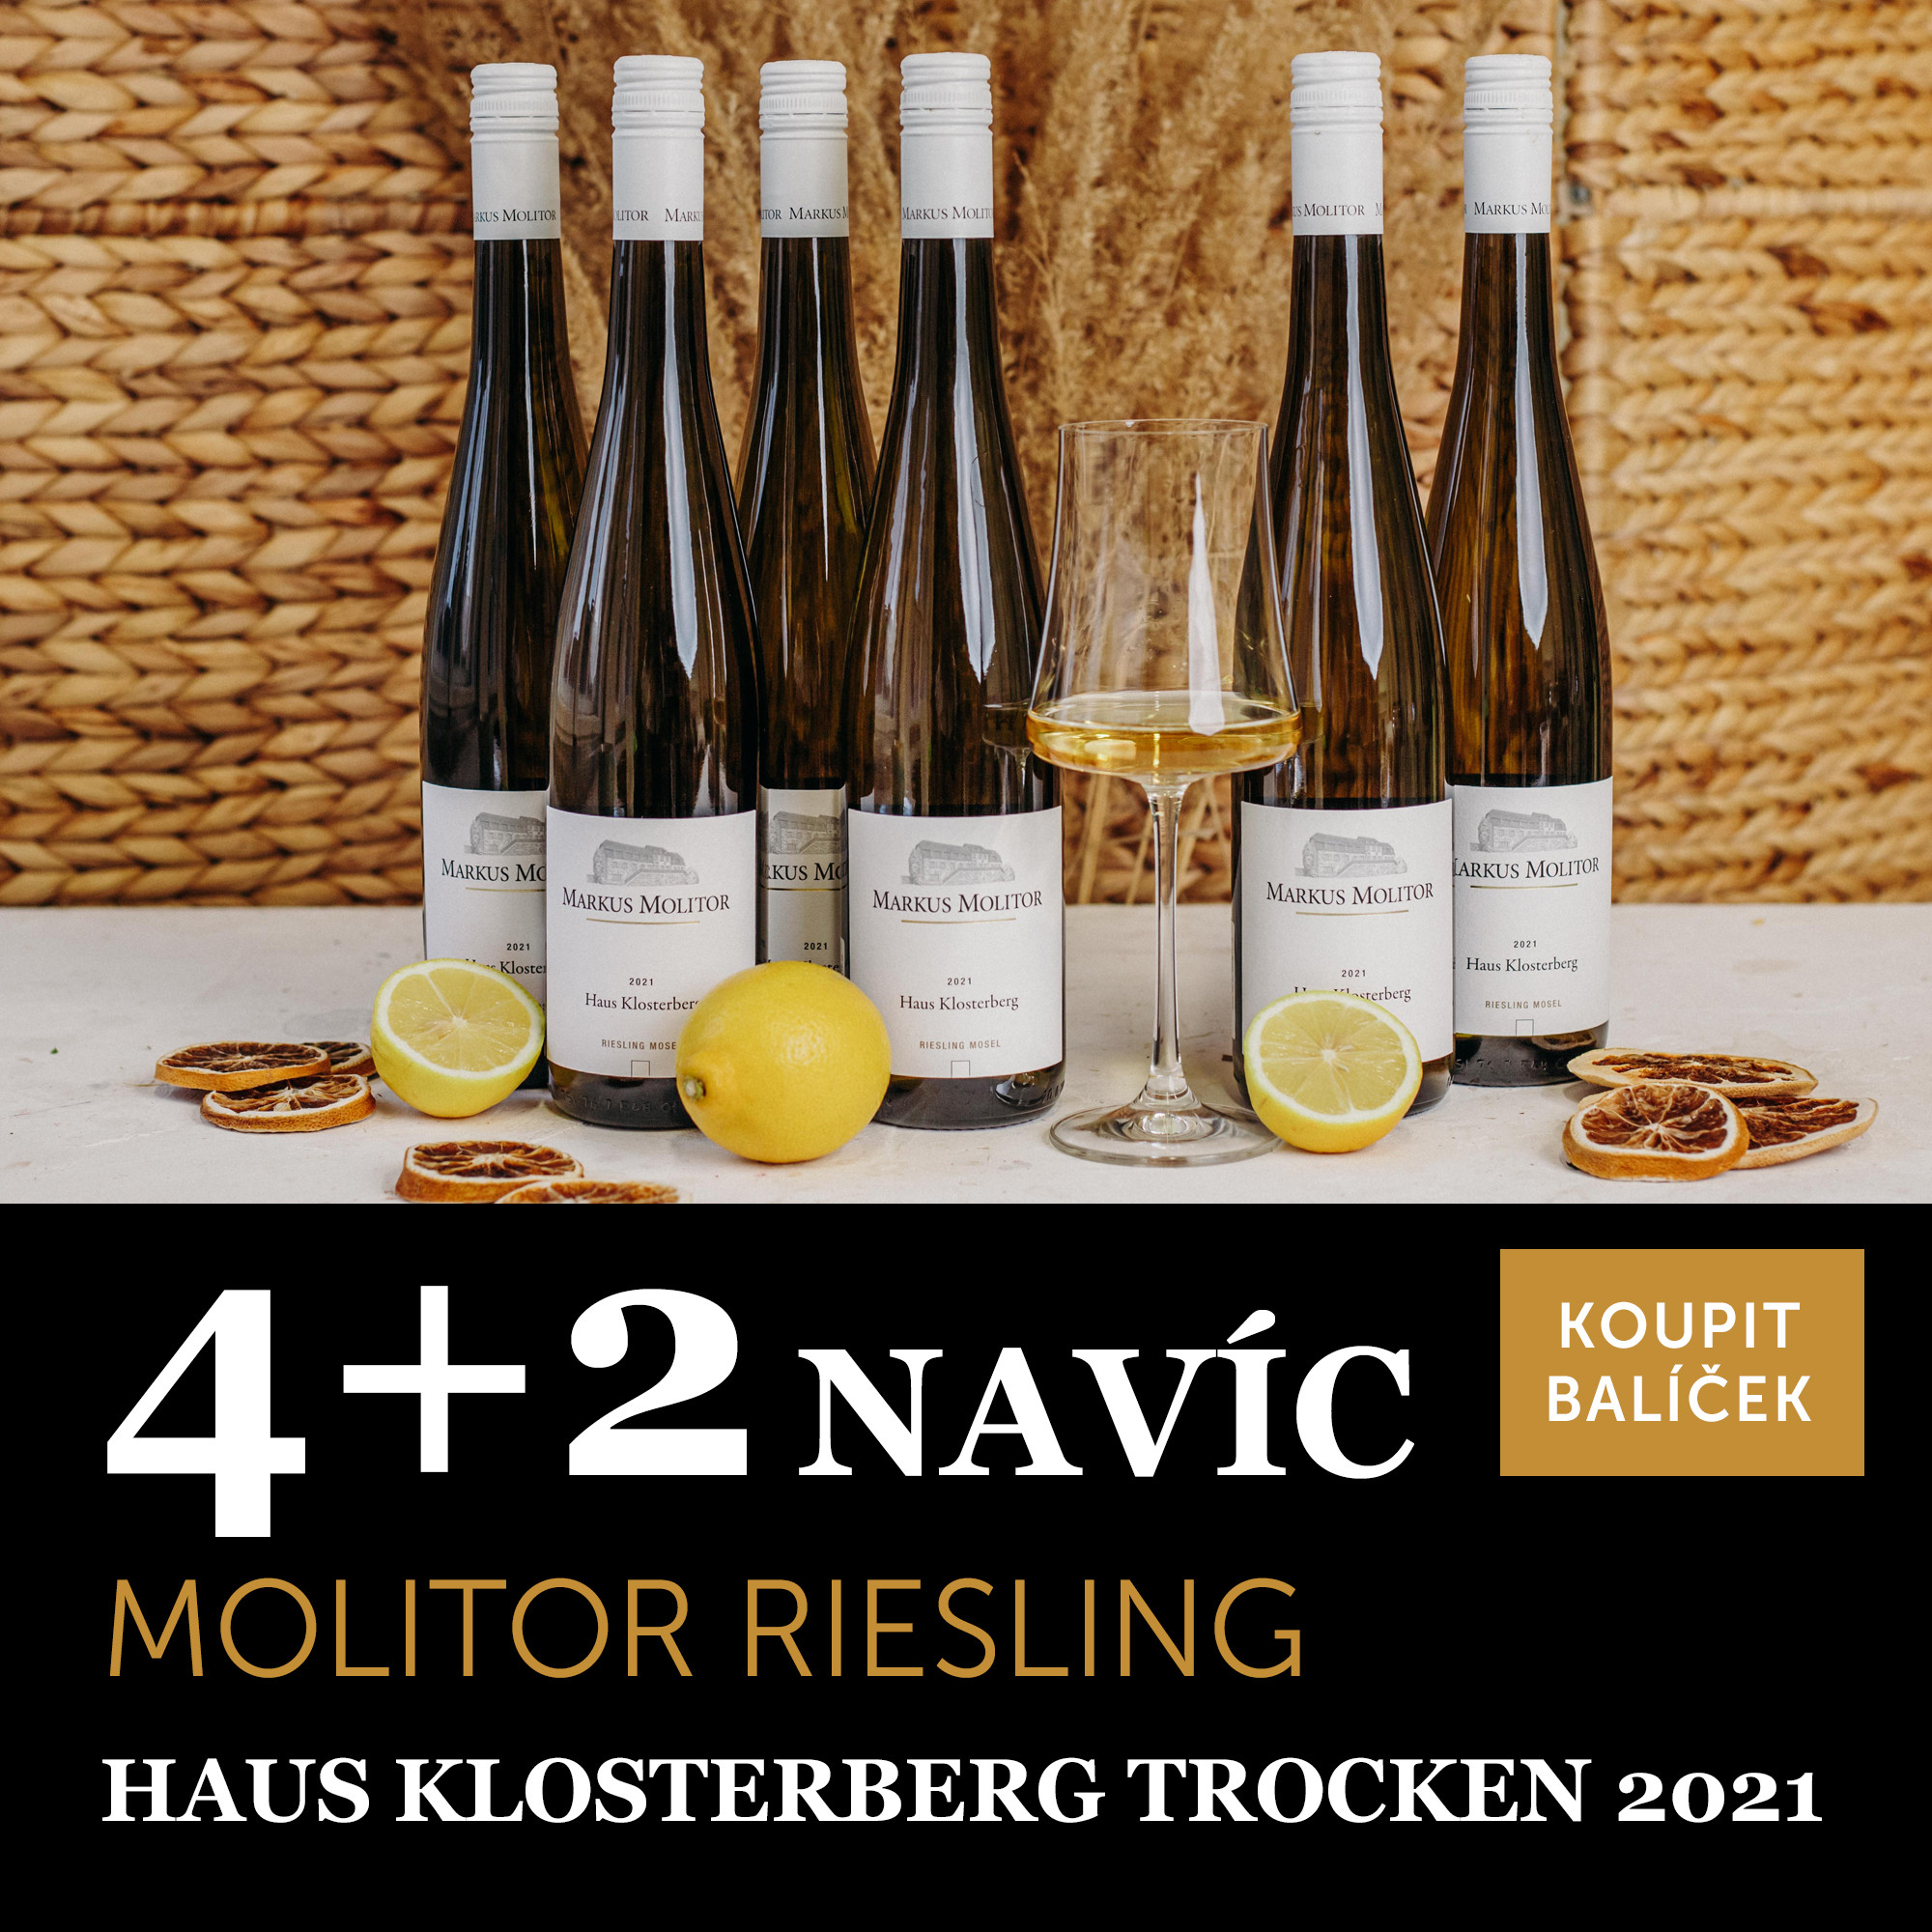 Víno měsíce března - Molitor Riesling Haus Klosterberg trocken 2021 4+2 navíc - UKONČENO